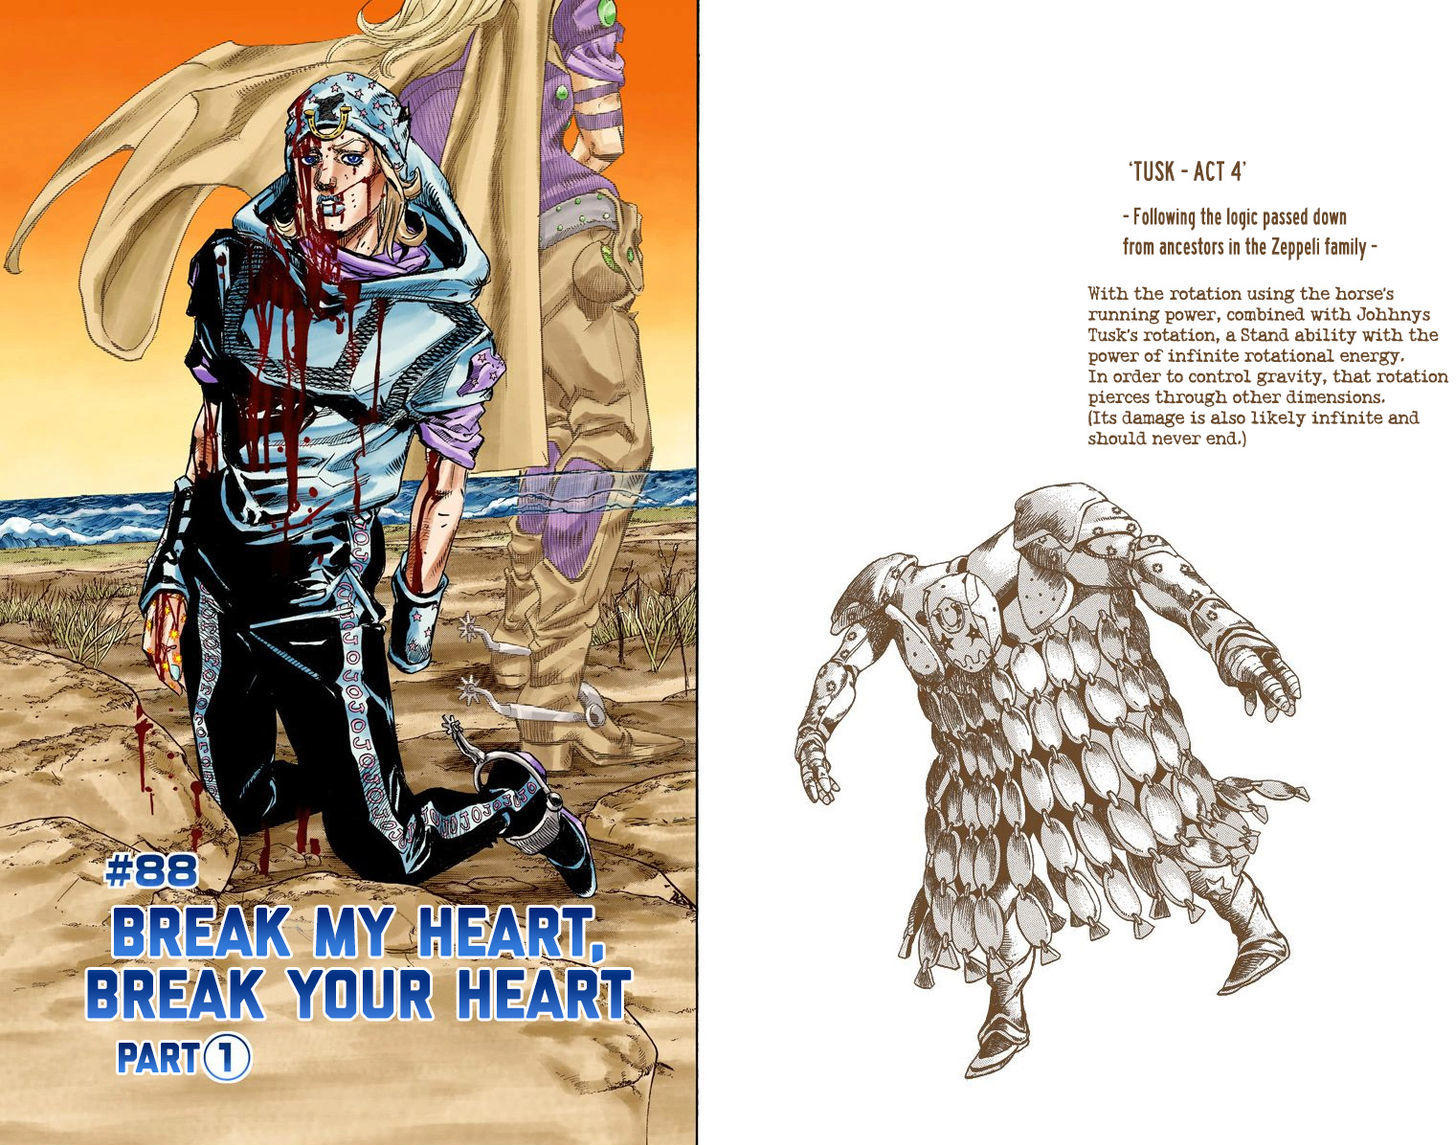 Read Steel Ball Run Vol.22 Chapter 88 : Break My Heart, Break Your Heart  (Part 1) - Manganelo